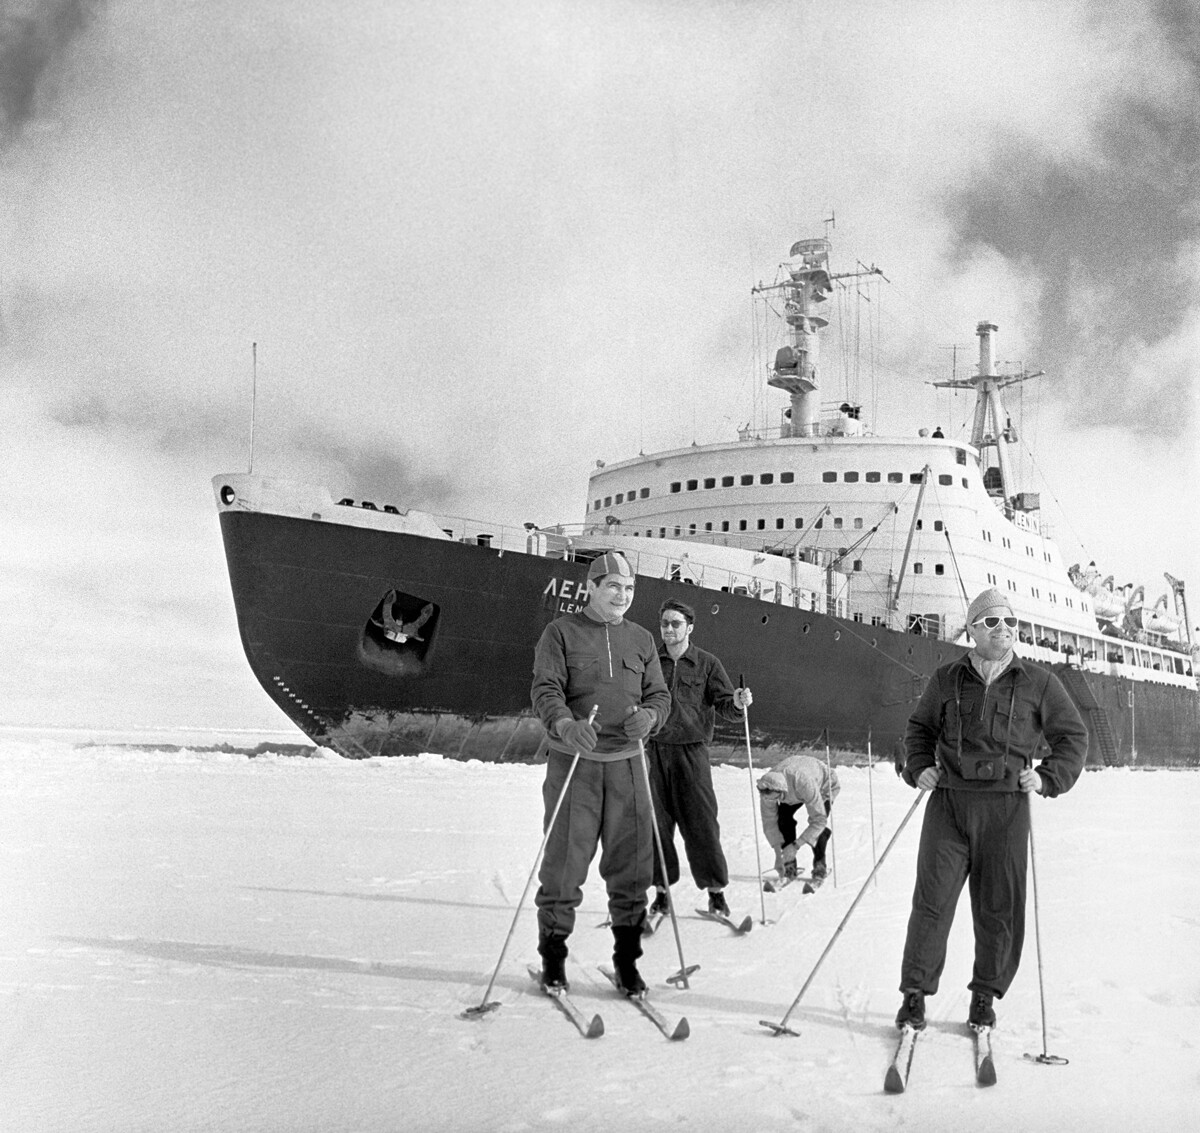 Члены экипажа атомохода «Ленин» на лыжной прогулке в момент короткой стоянки корабля во льдах Арктики, 1960